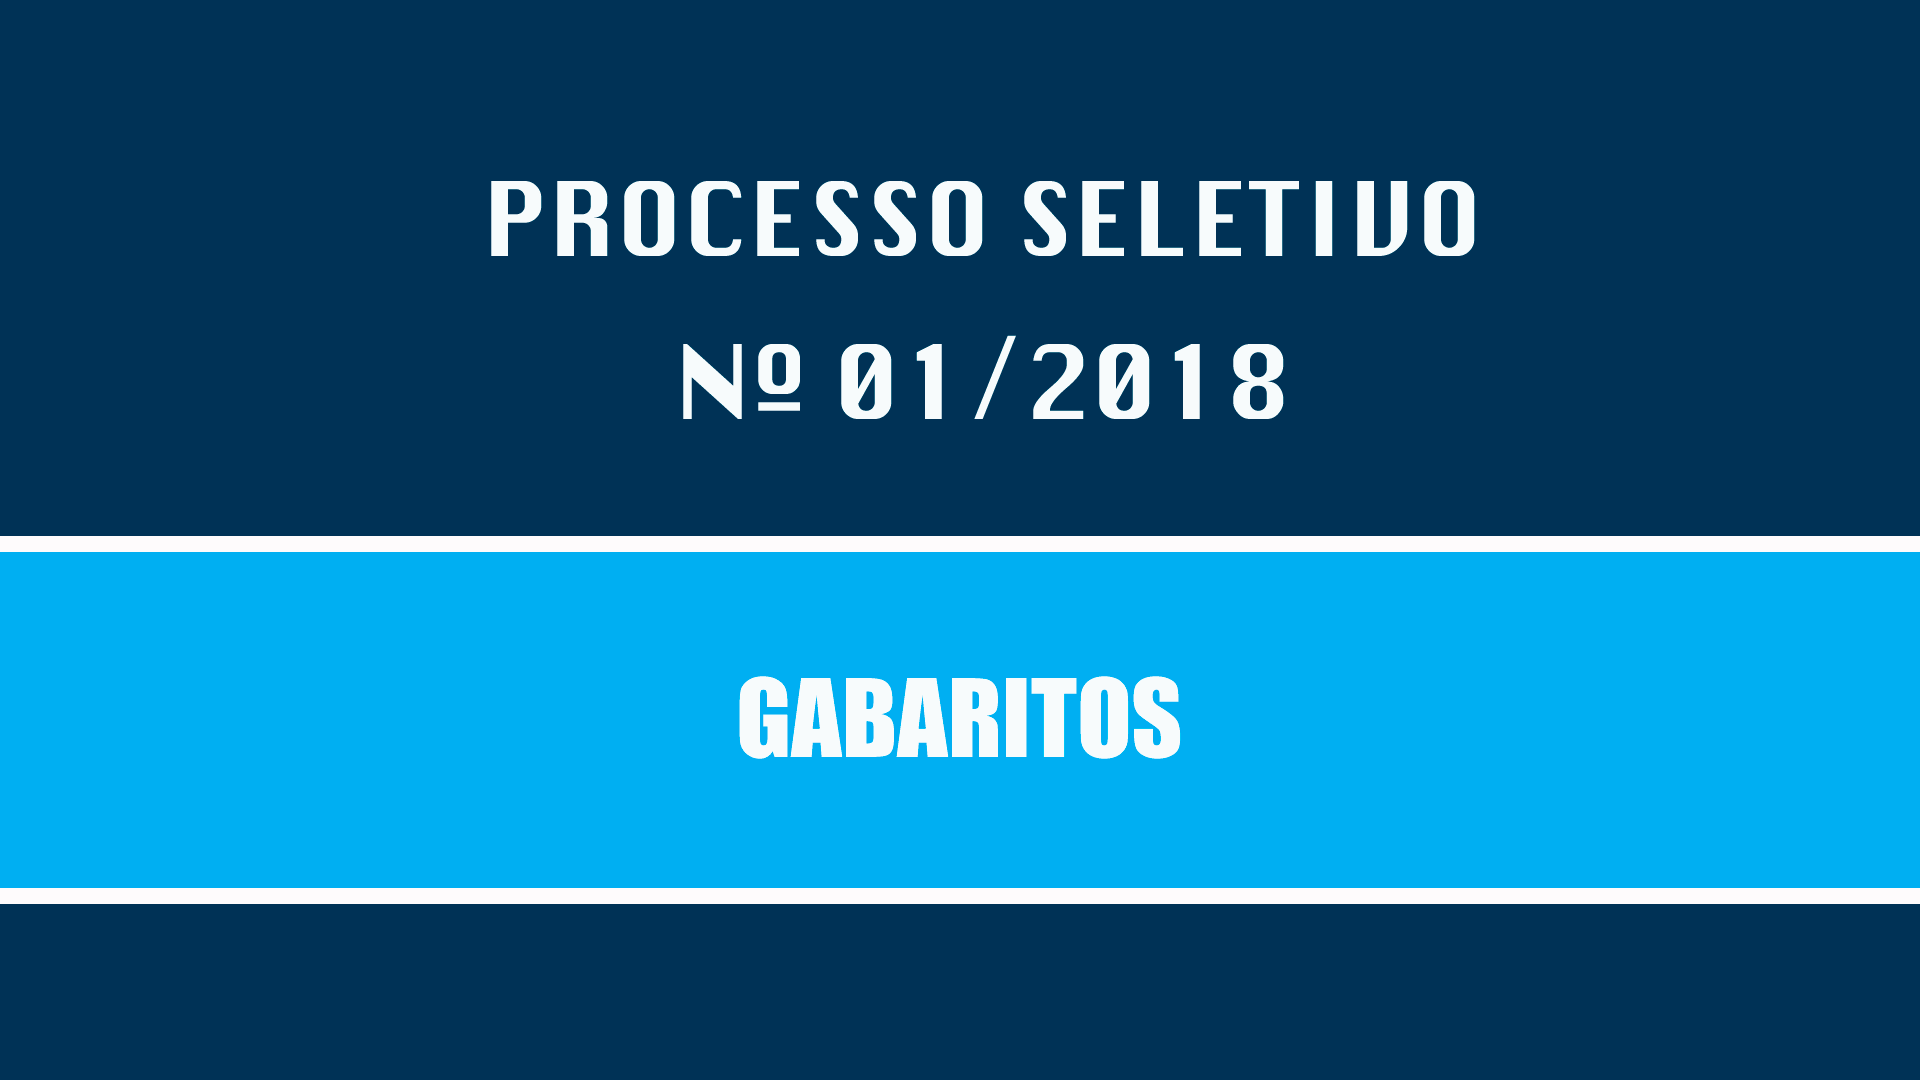 PROCESSO SELETIVO Nº 001/2018 - GABARITOS